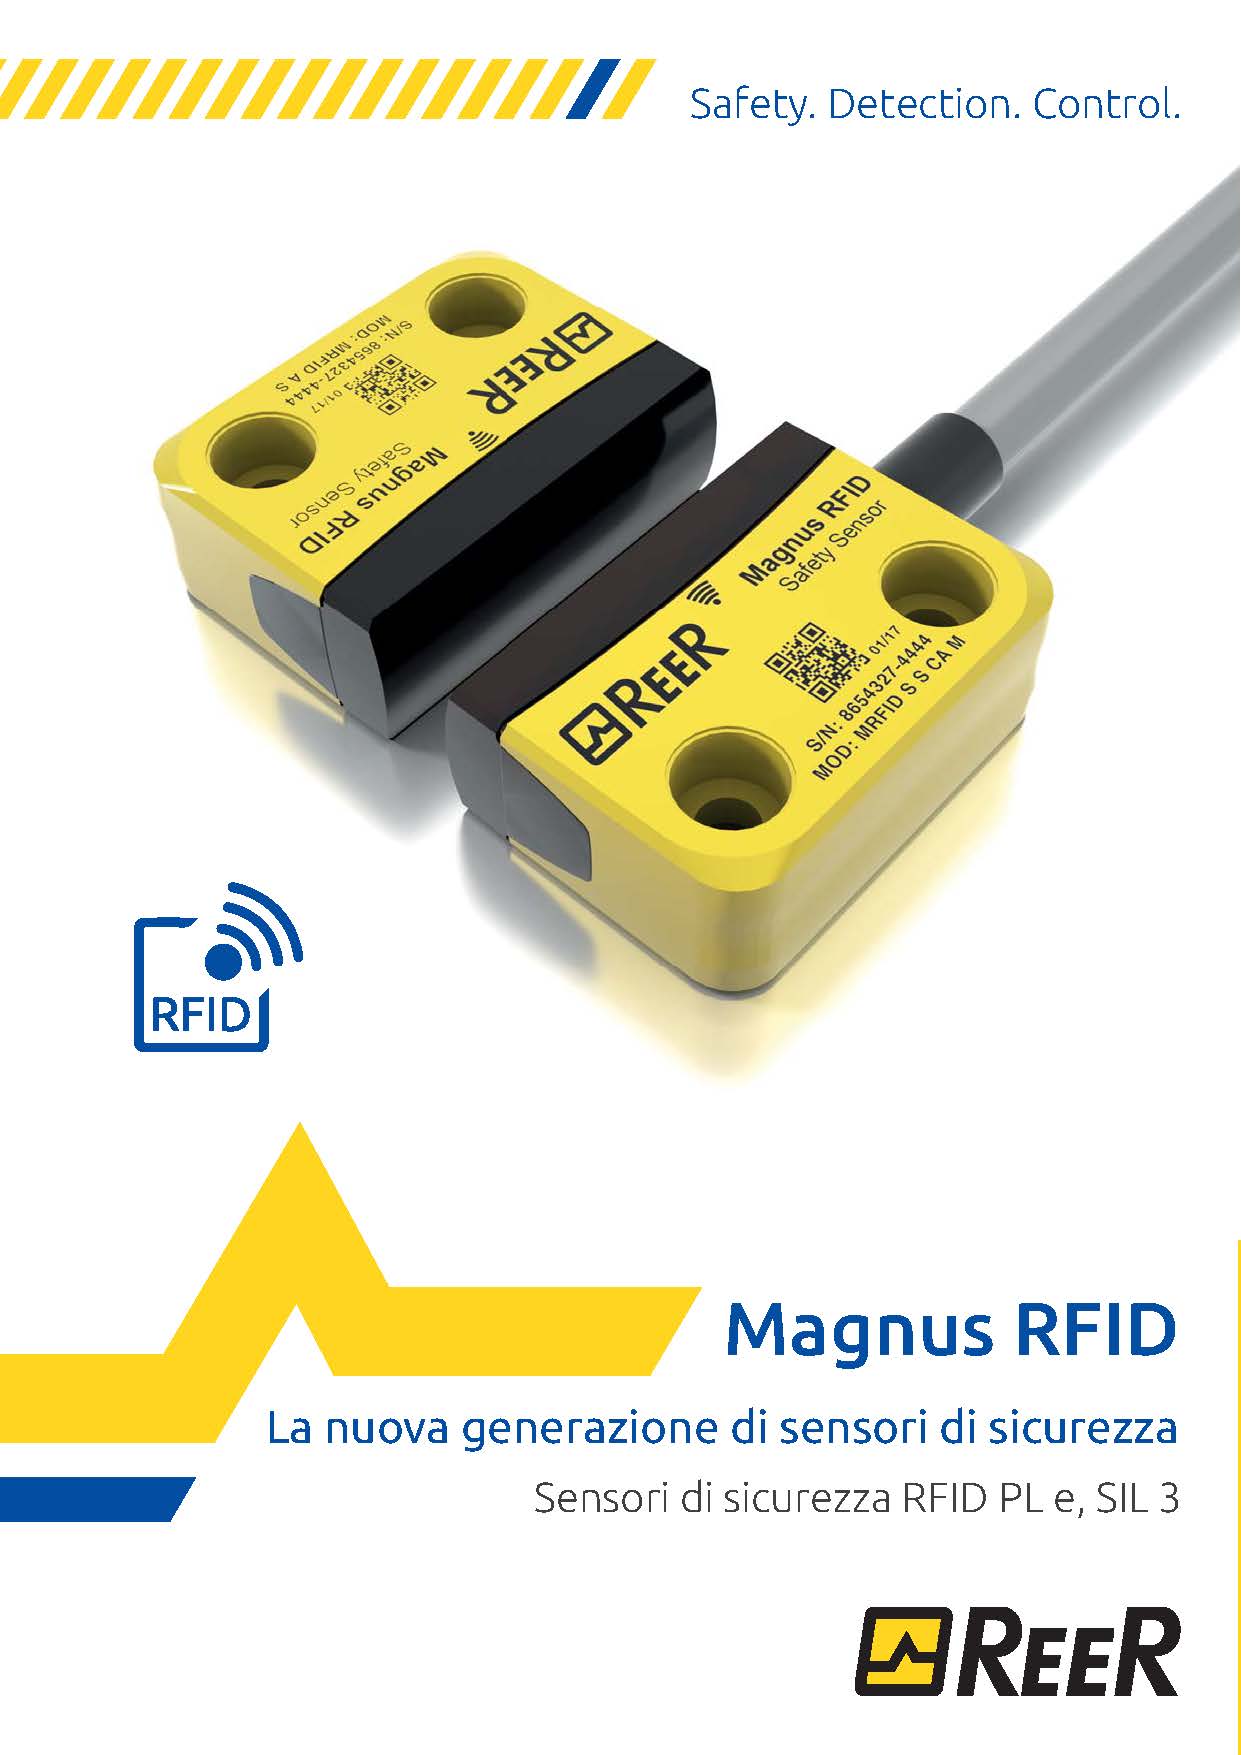 Бесконтактный датчик безопасности MAGNUS RFID (брошюра, EN)